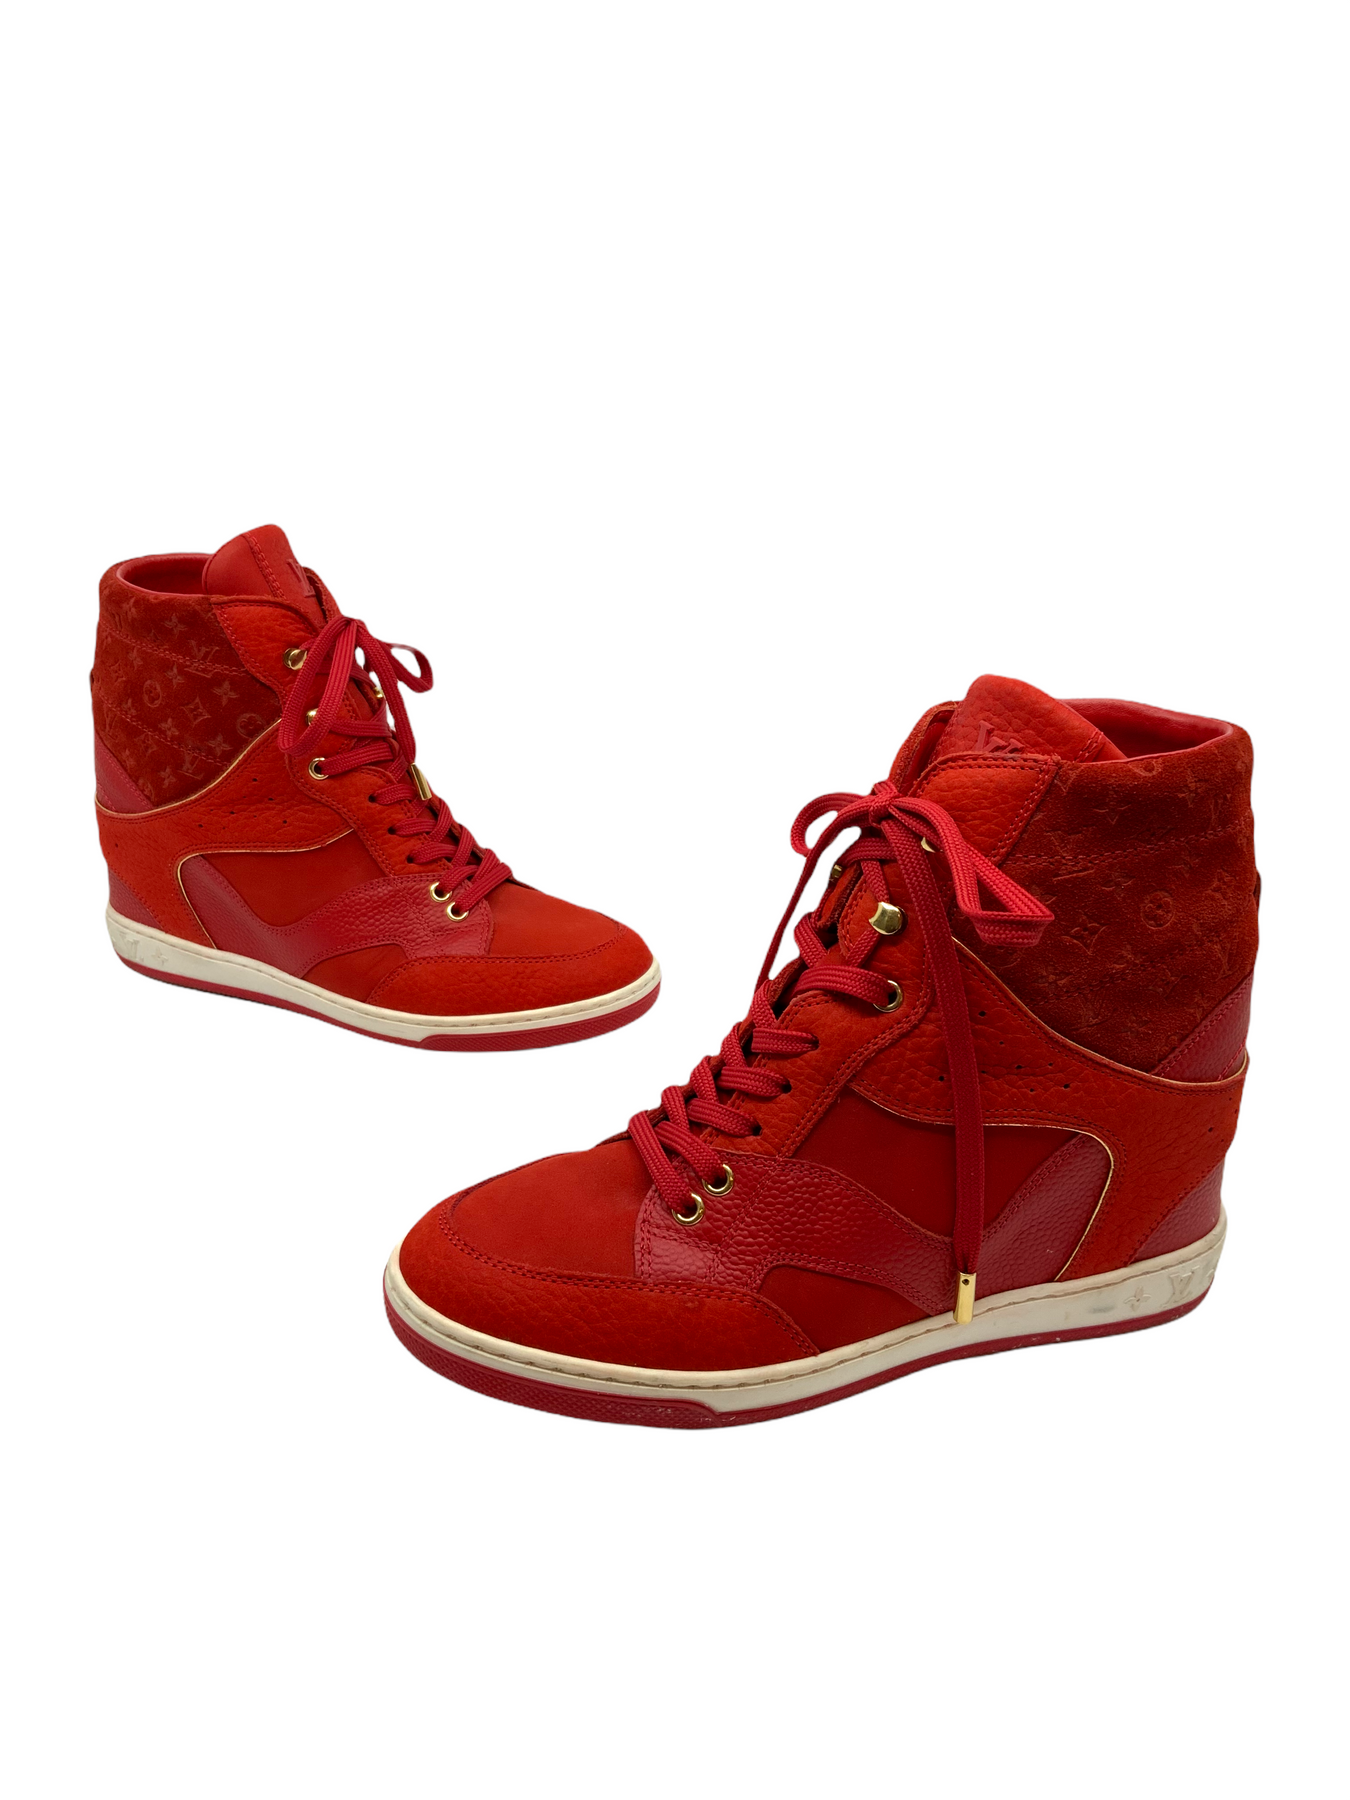 Louis Vuitton, Shoes, Louis Vuitton Cliff Top Sneaker